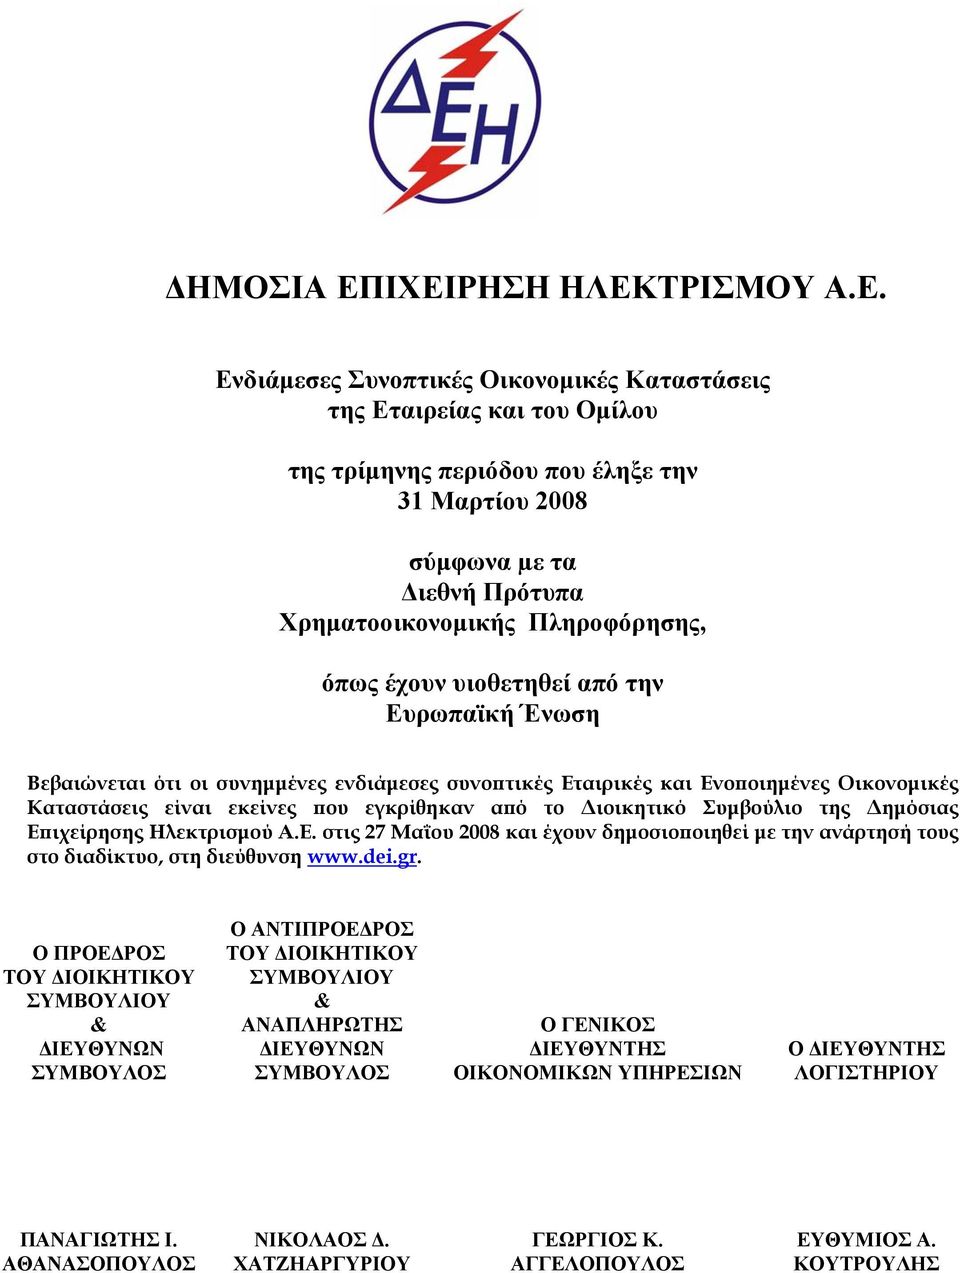 Δημόσιας Επιχείρησης Ηλεκτρισμού Α.Ε. στις 27 Μαΐου 2008 και έχουν δημοσιοποιηθεί με την ανάρτησή τους στο διαδίκτυο, στη διεύθυνση www.dei.gr.